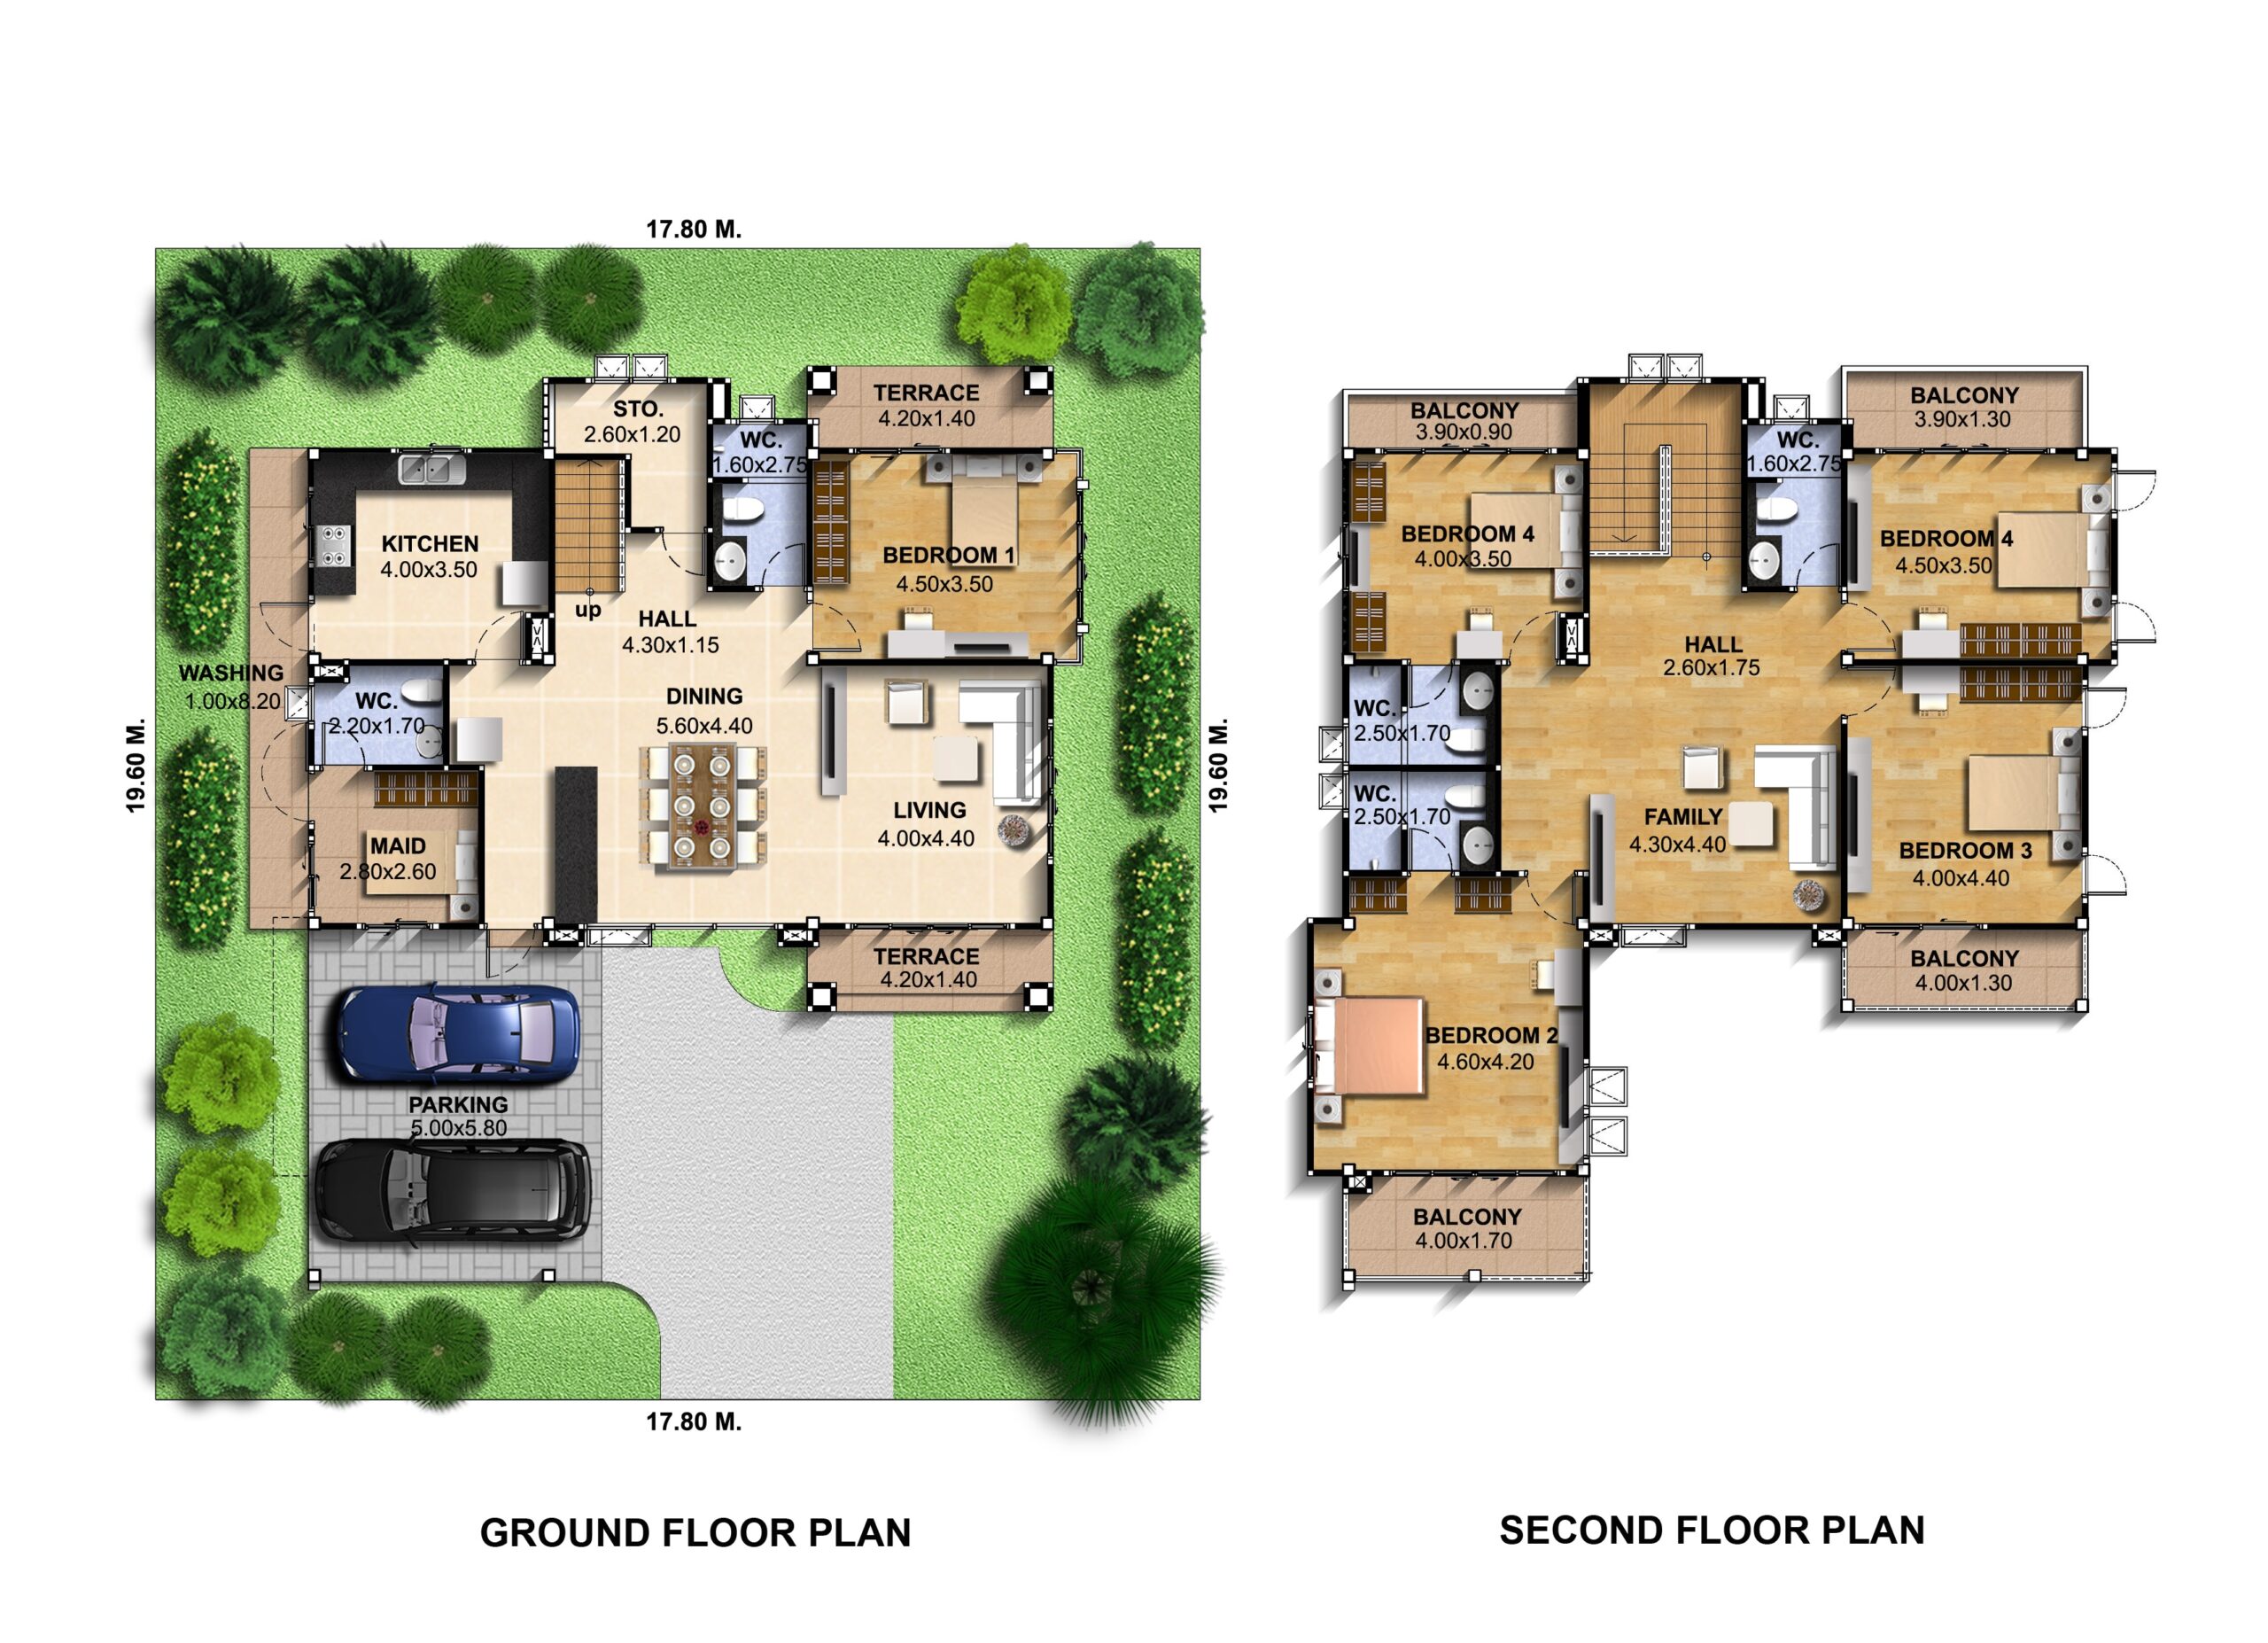 House-Idea-Plot-17x19-meter-6-Bedrooms-Layout-floor-plan